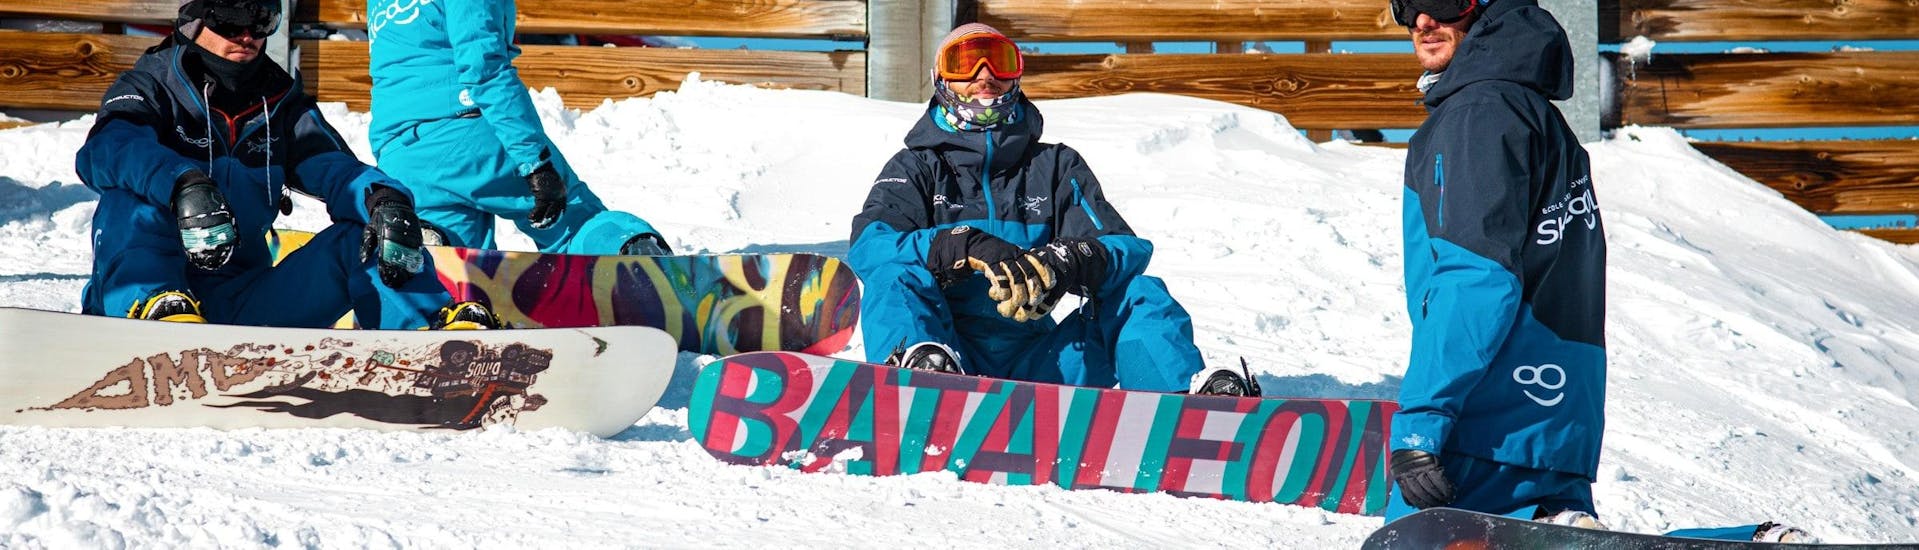 Die Snowboarder sitzen im Schnee und warten auf den Beginn ihres Private Snowboarkurses - Nachmittags mit Ski Cool Val Thorens.